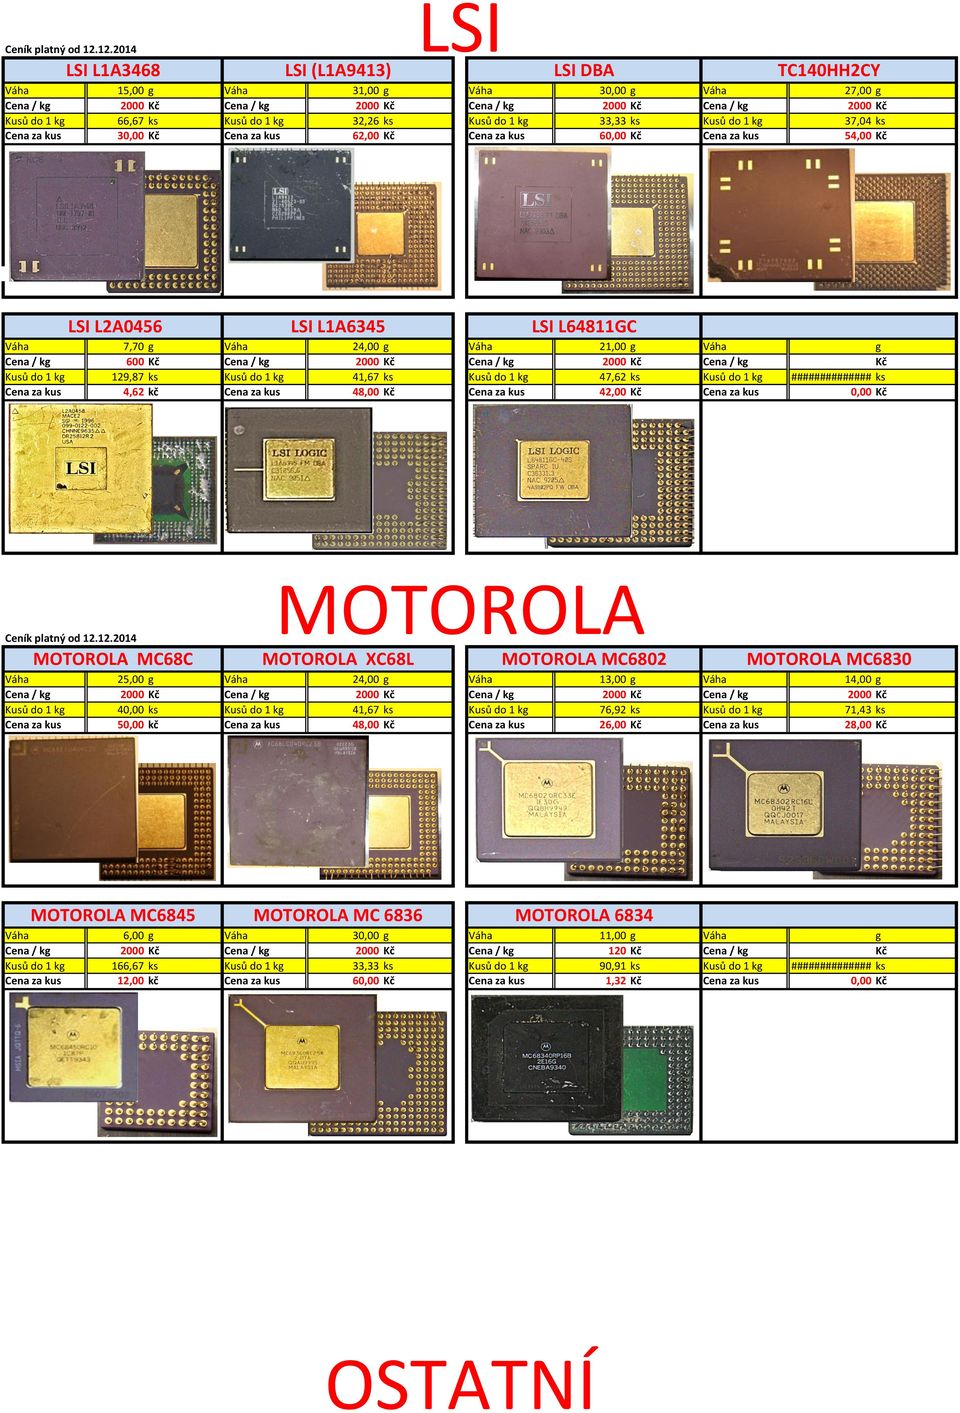 MOTOROLA MOTOROLA XC68L MOTOROLA MC6802 MOTOROLA MC6830 25,00 13,00 14,00 0 0 0 0 40,00 76,92 71,43 50,00 48,00 26,00 28,00